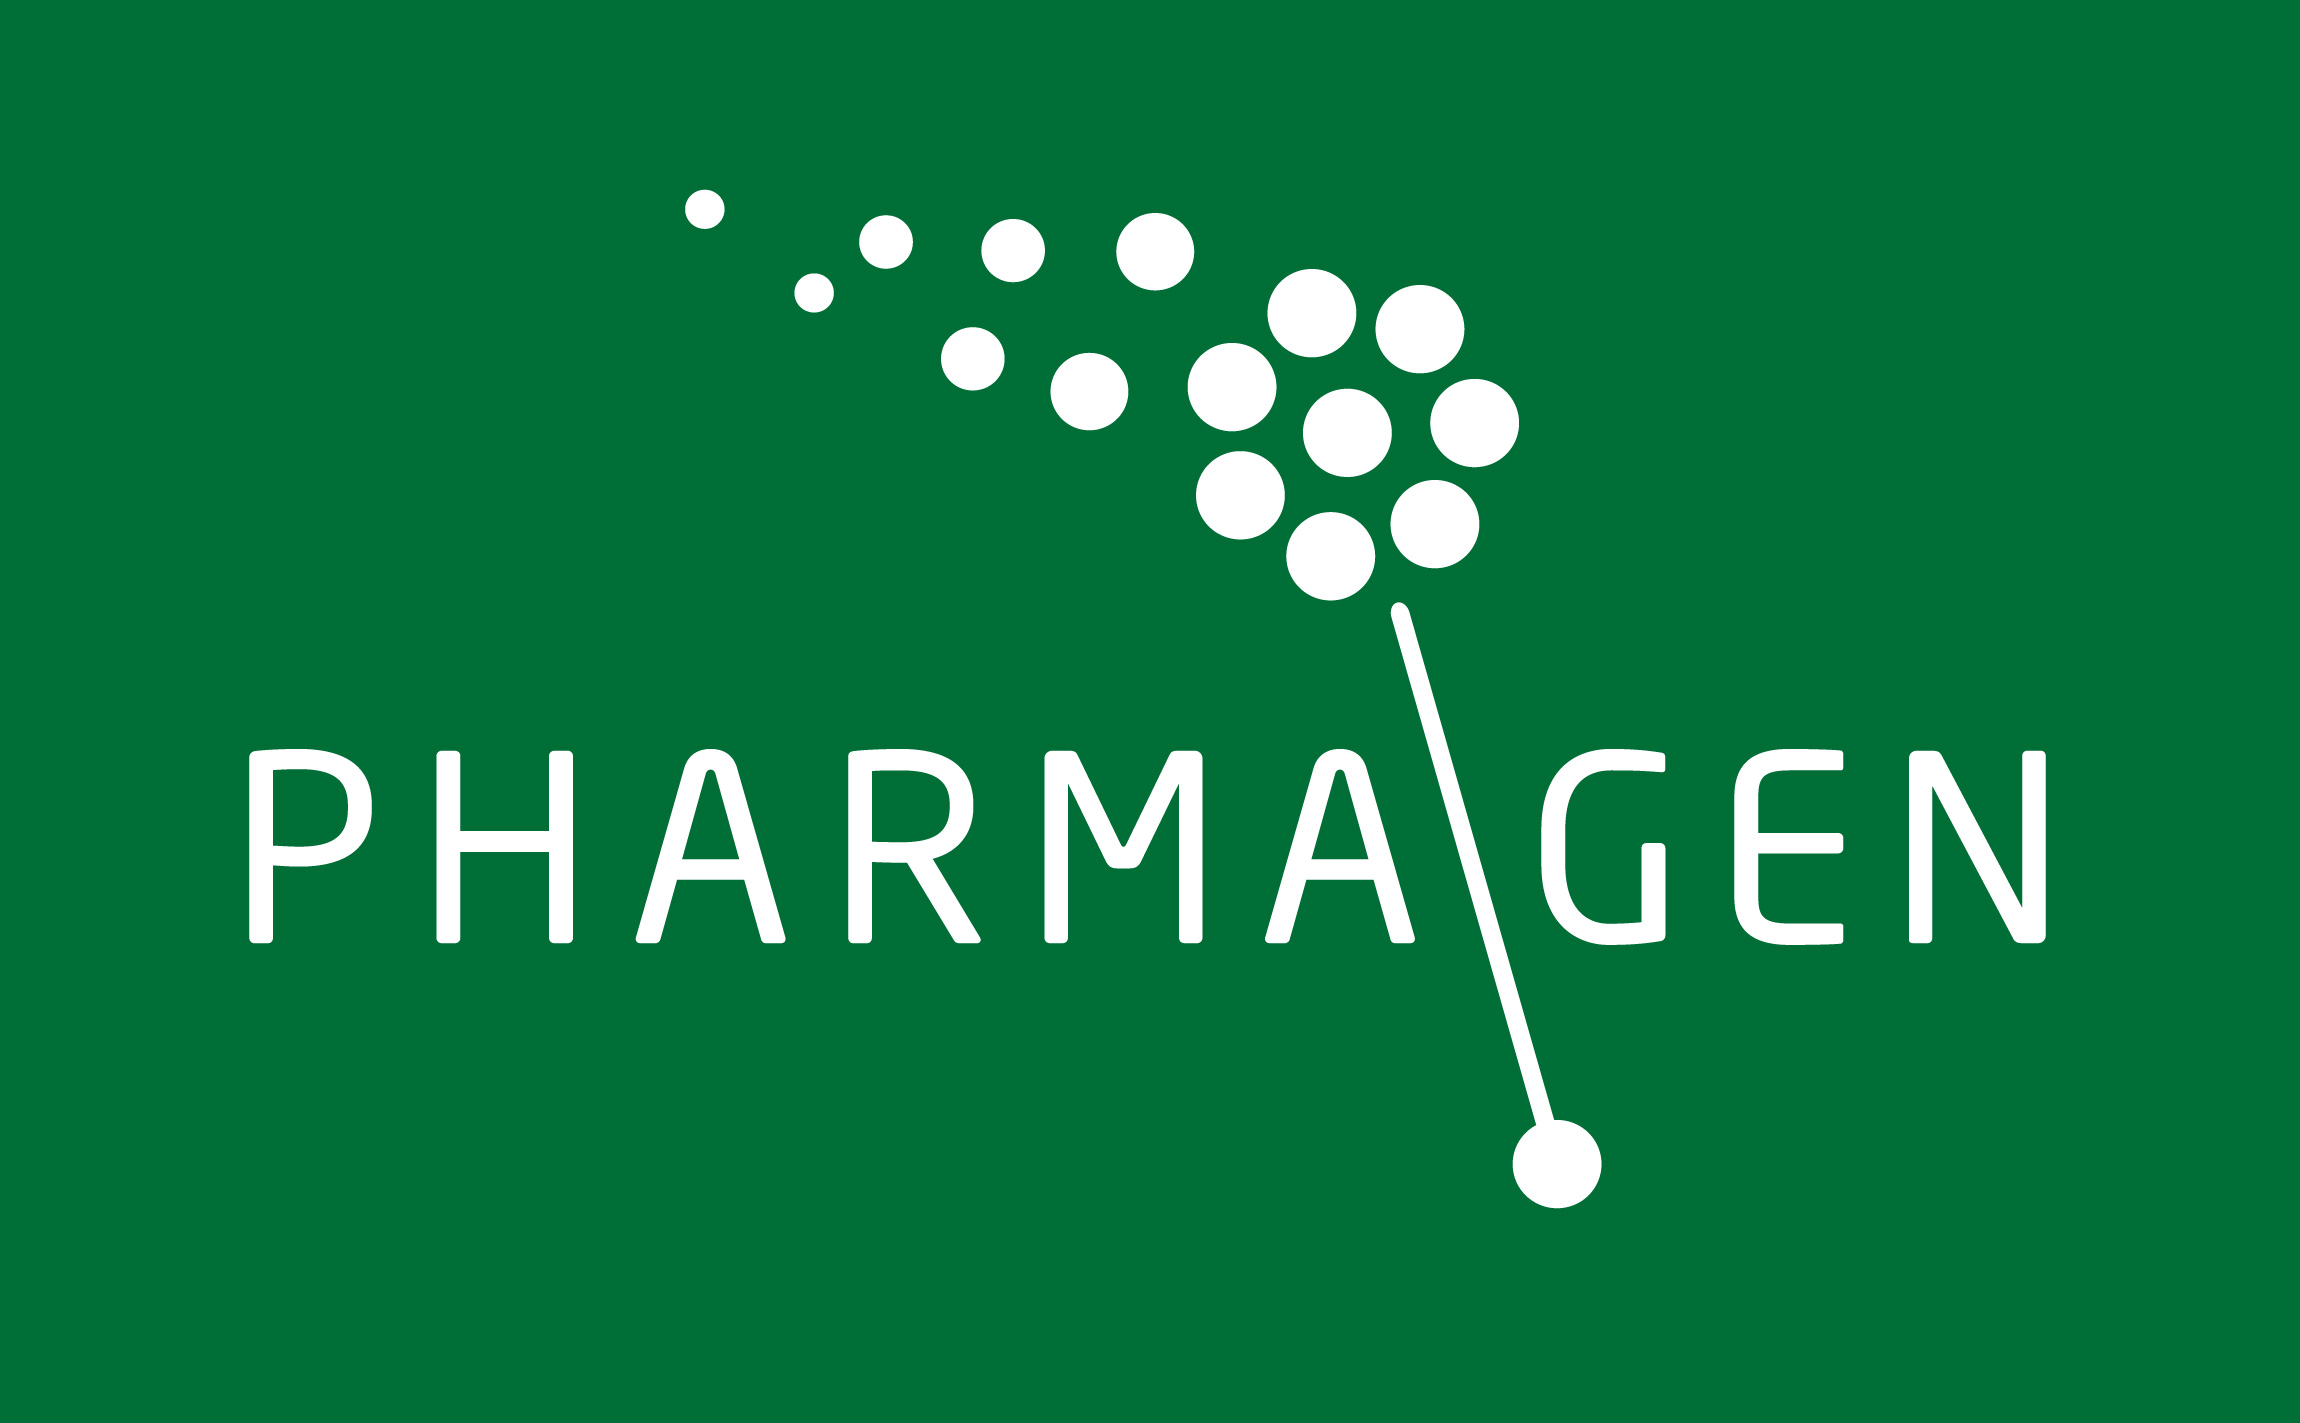 Pharmagen Pharmatech Branding & Identity